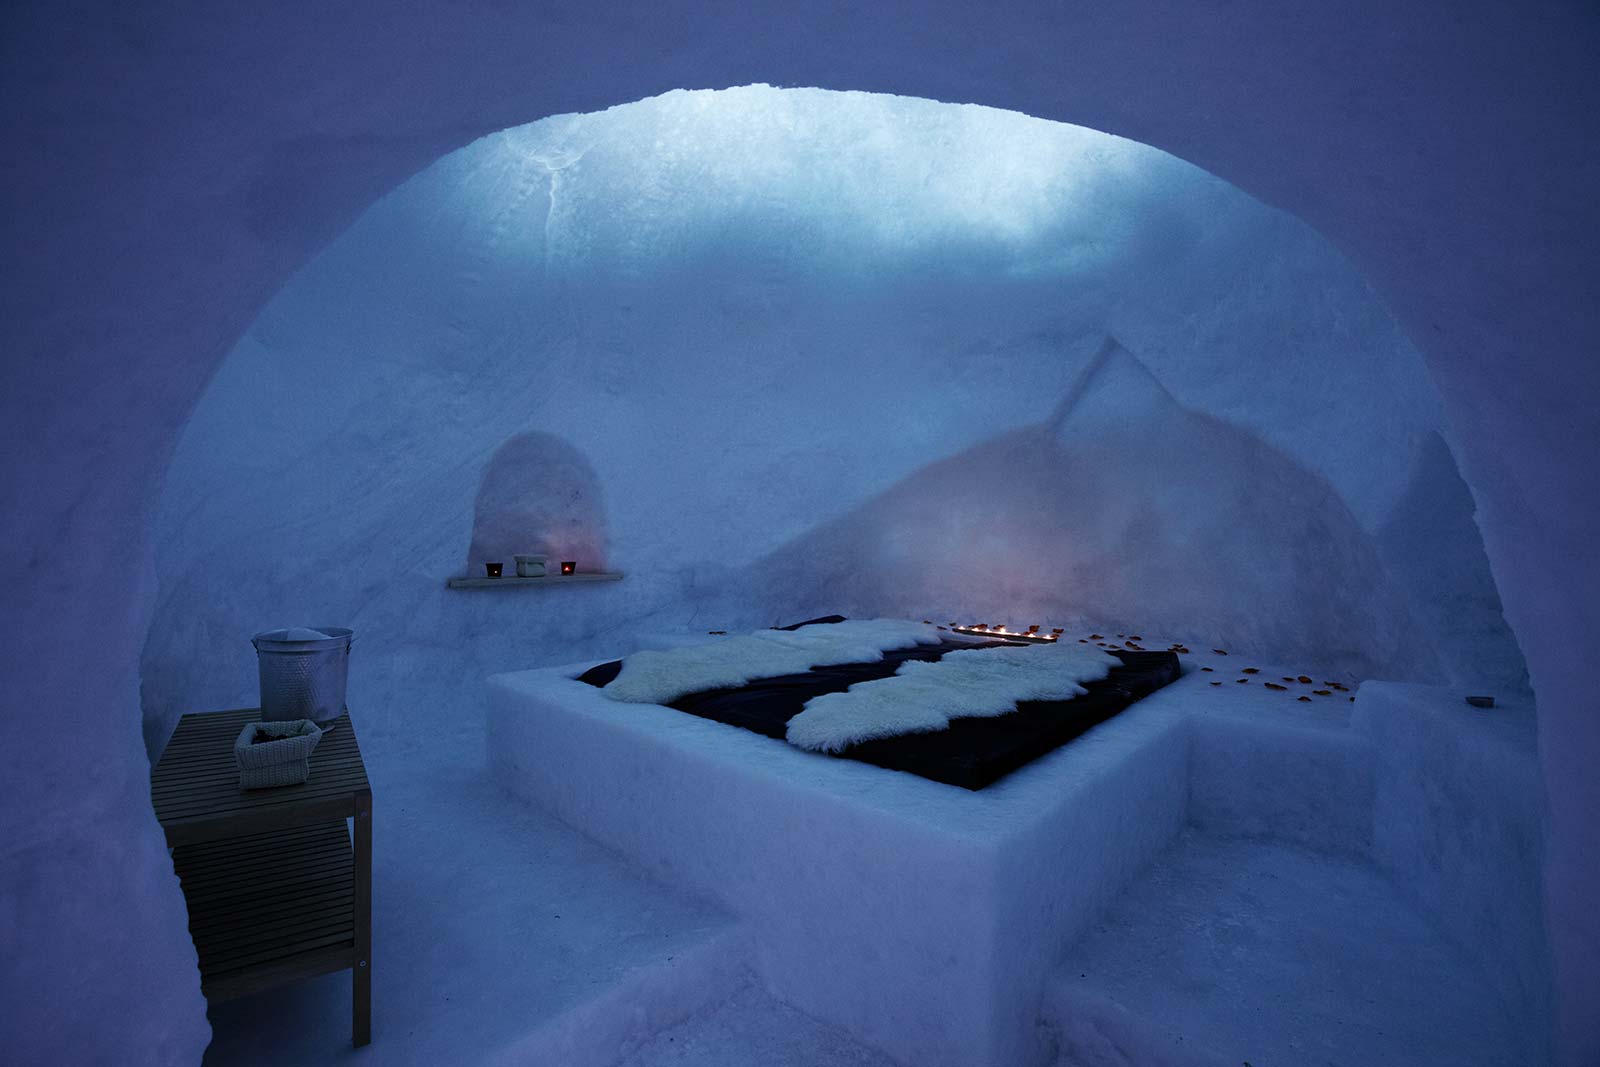 Una casa di ghiaccio: l'igloo del rifugio Bellavista ha il letto di ghiaccio, delle nicchie scavate nella neve.